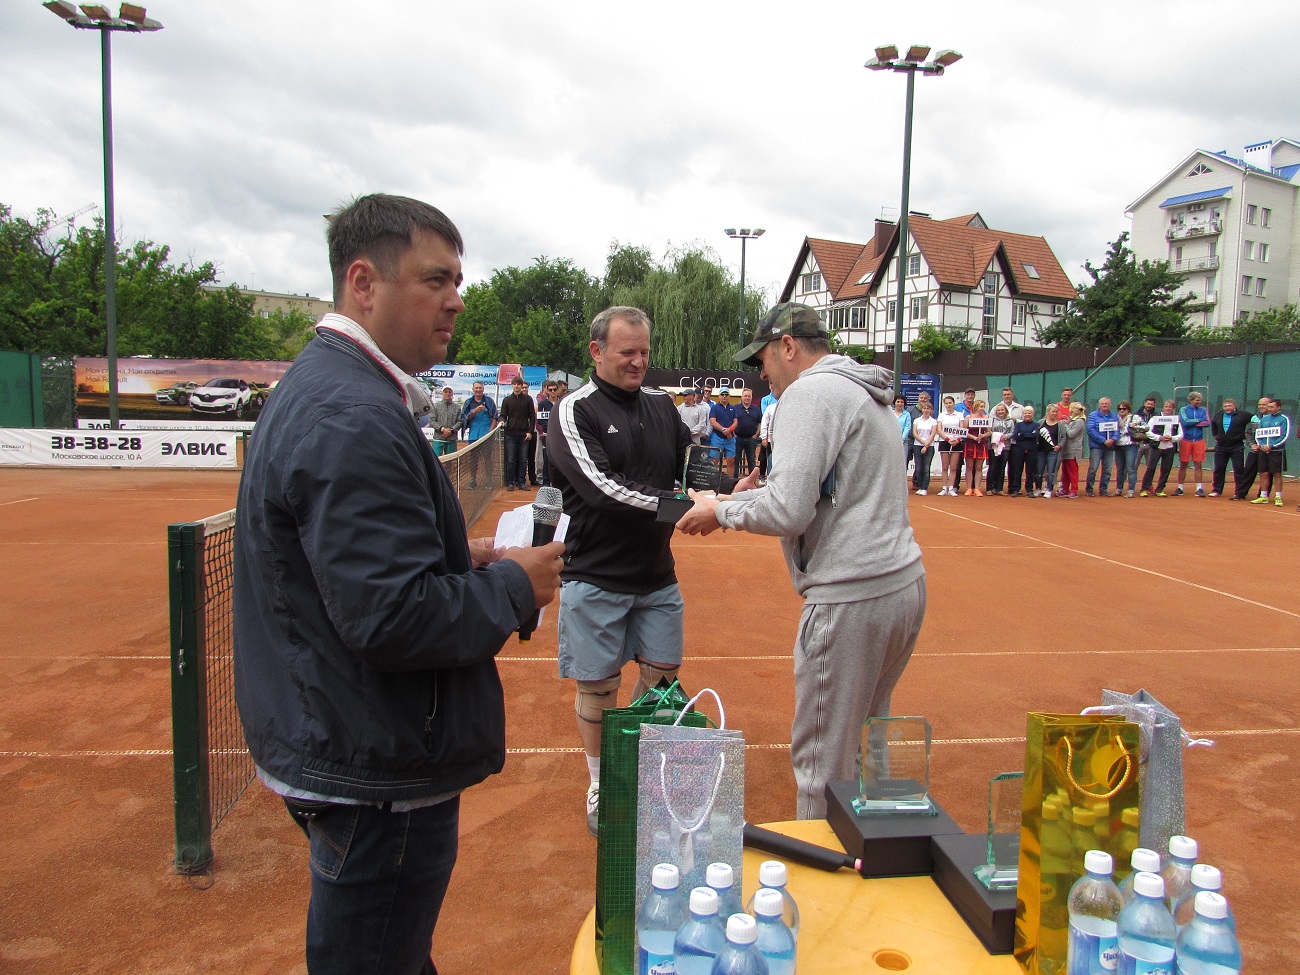 Всероссийский теннисный турнир «SARATOV OPEN 2017»